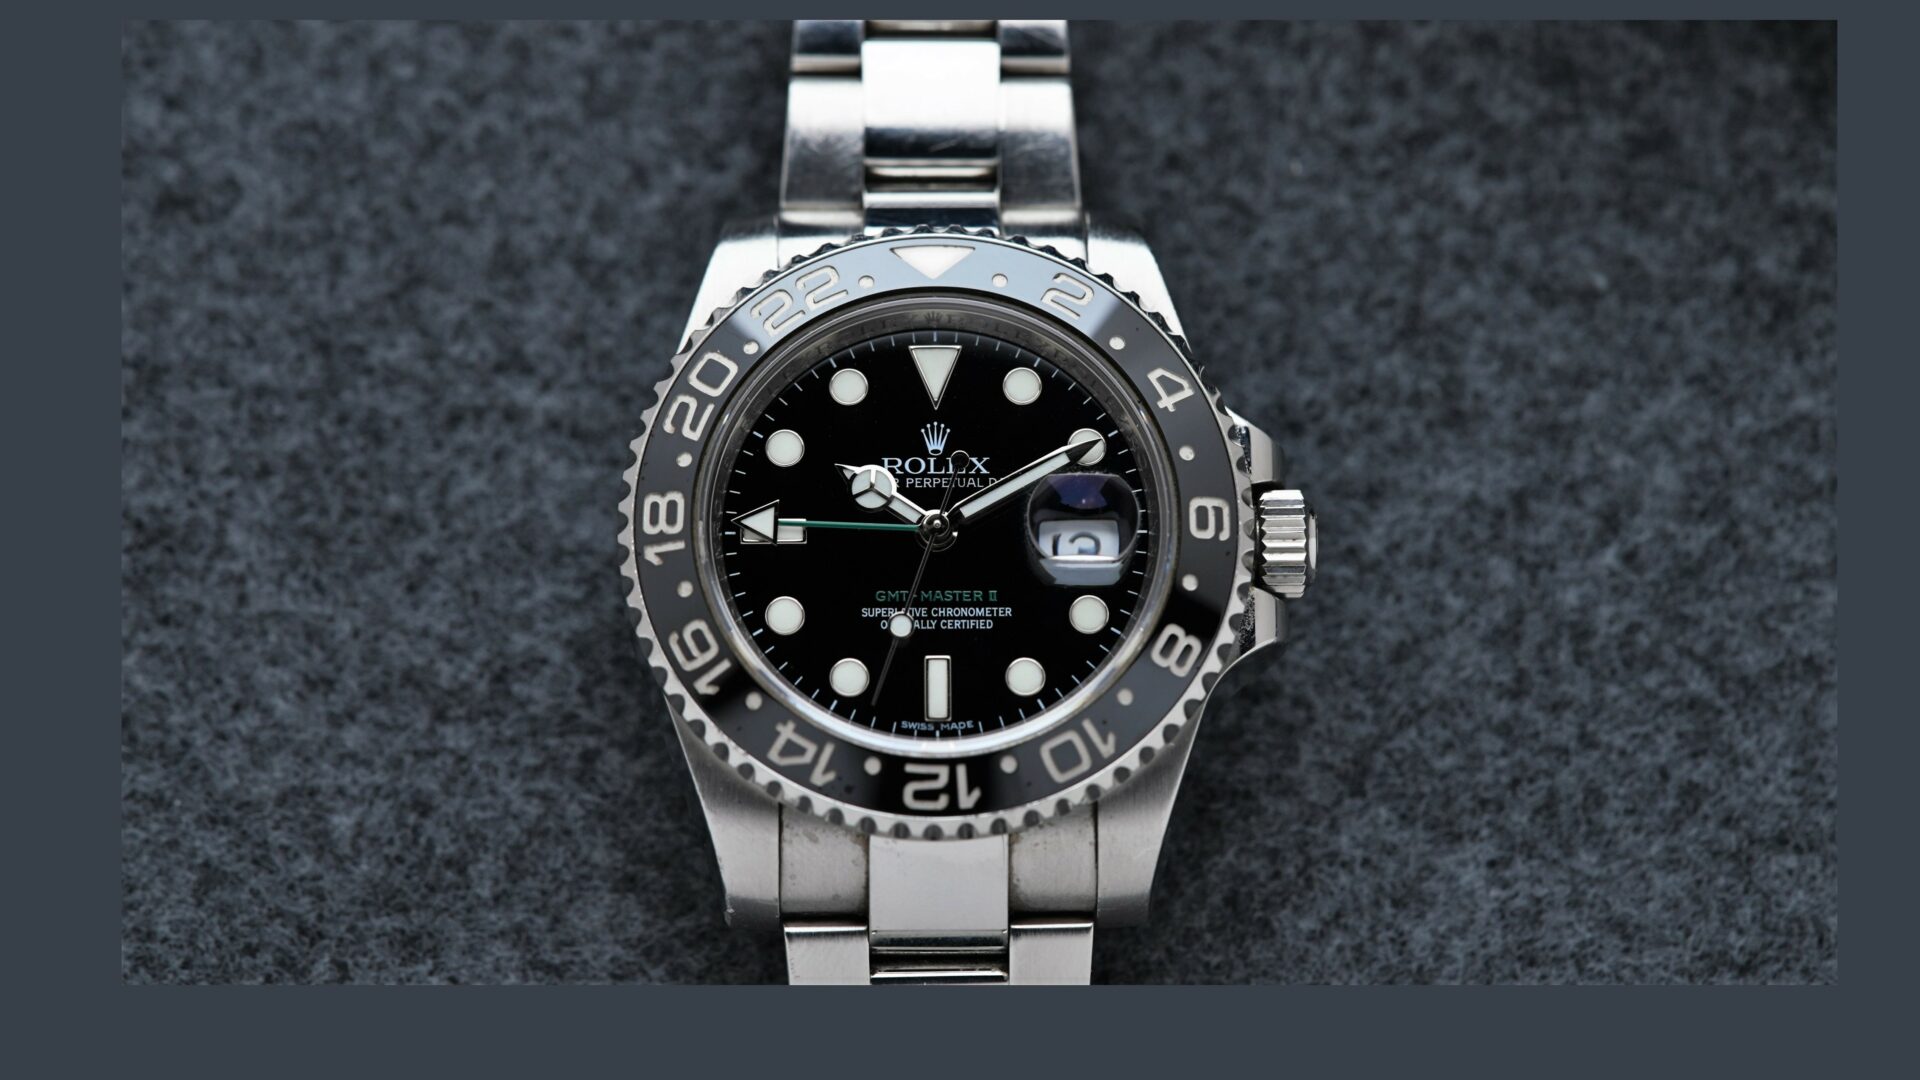 Rolex GMT-Master II Black Discontinued 116710LN wristwatch featured under white lighting.